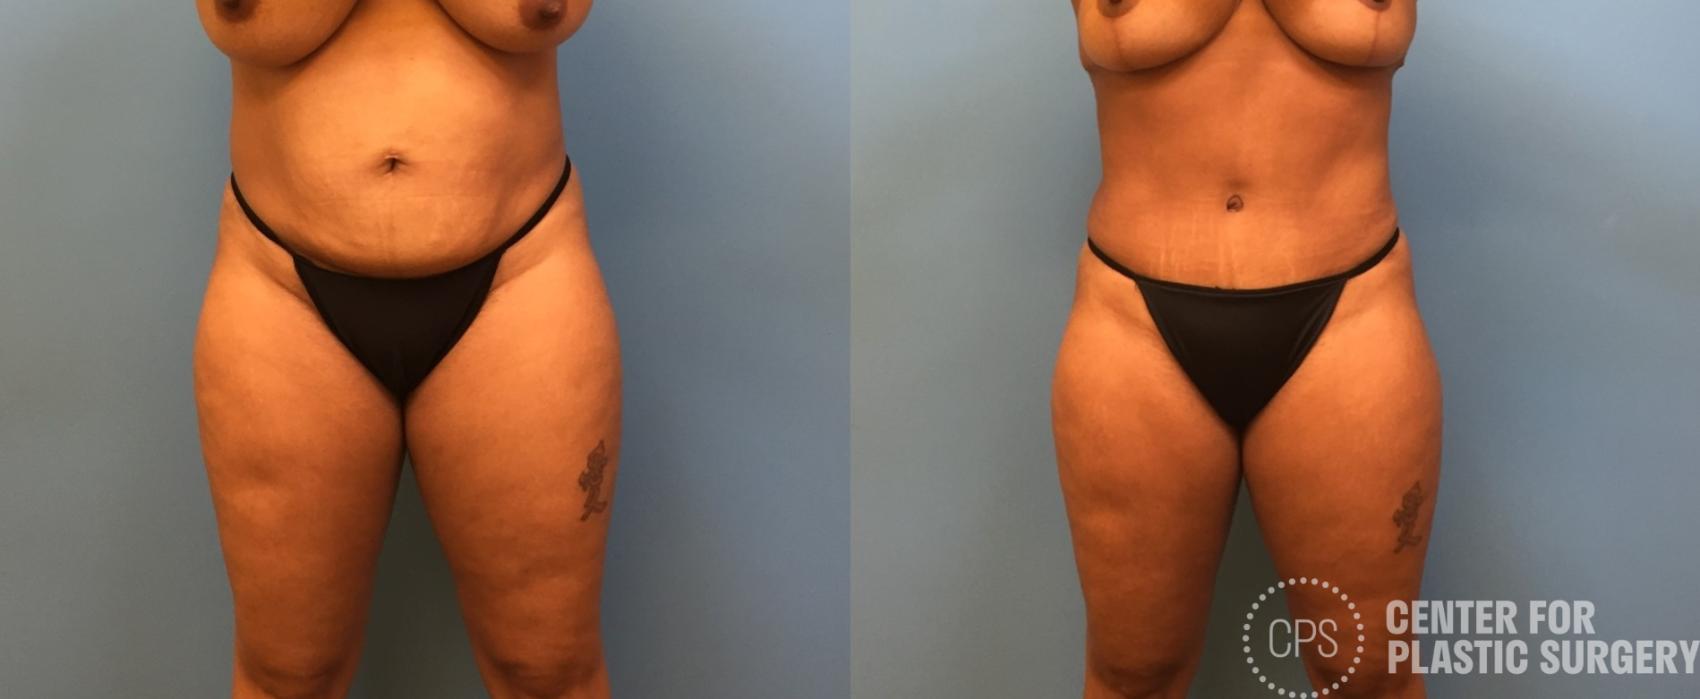 Liposuction Case 247 Before & After Front | Annandale, Washington D.C. Metropolitan Area | Center for Plastic Surgery